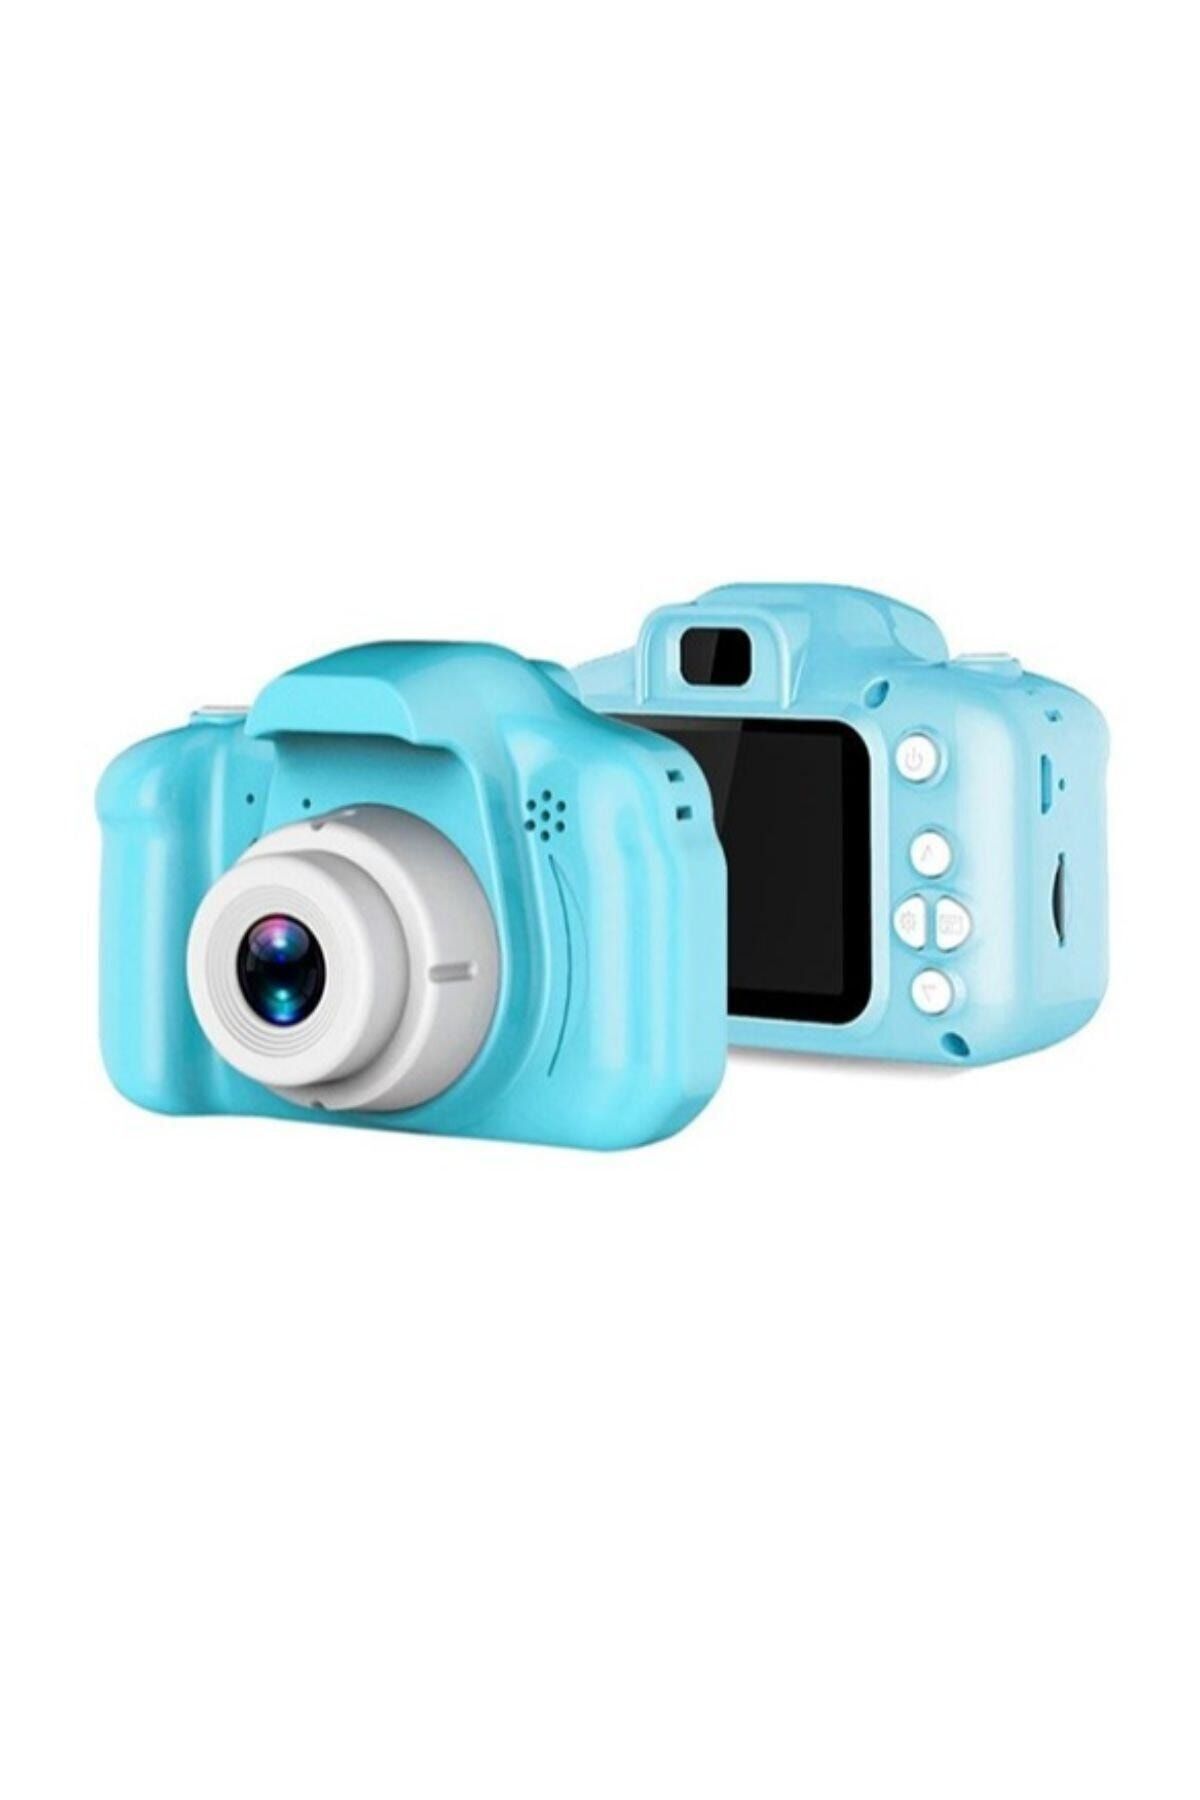 BLUE İNTER Mini 1080p Hd Kamera Çocuklar Için Dijital Fotoğraf Makinesi Cmr9